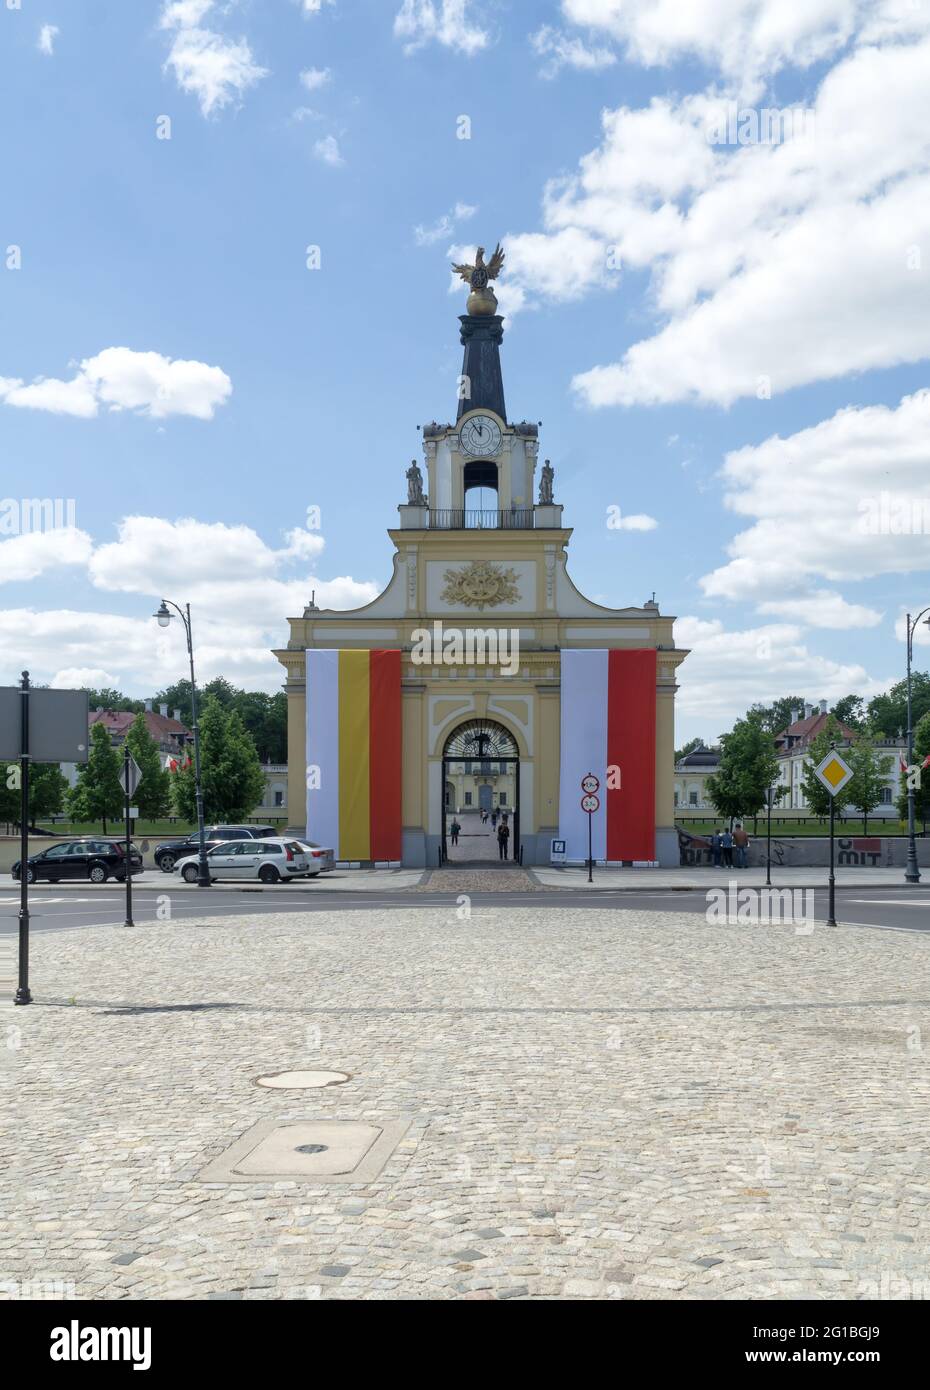 BIALYSTOK, POLOGNE - 03 juin 2021 : porte du griffon du Palais de Branicki, porte principale ornée de drapeaux de Pologne et de Białystok, Europe Banque D'Images